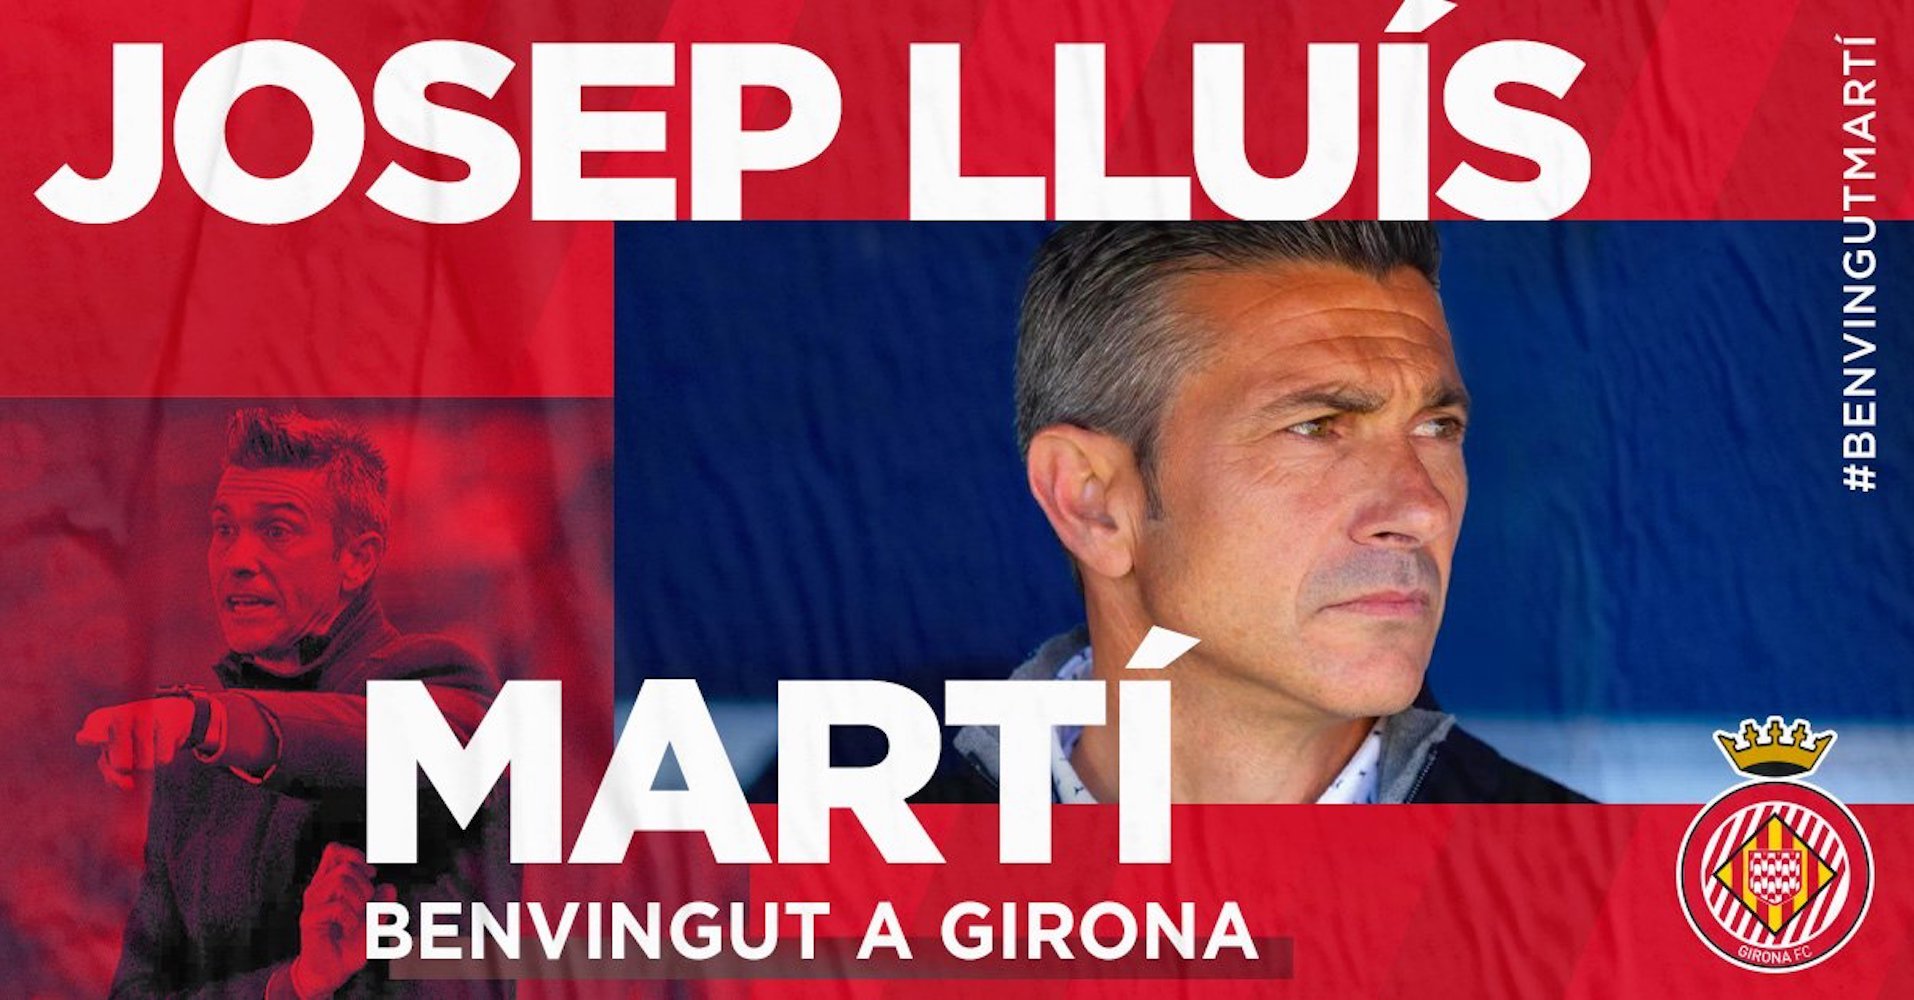 OFICIAL: Josep Lluís Martí es el nuevo entrenador del Girona